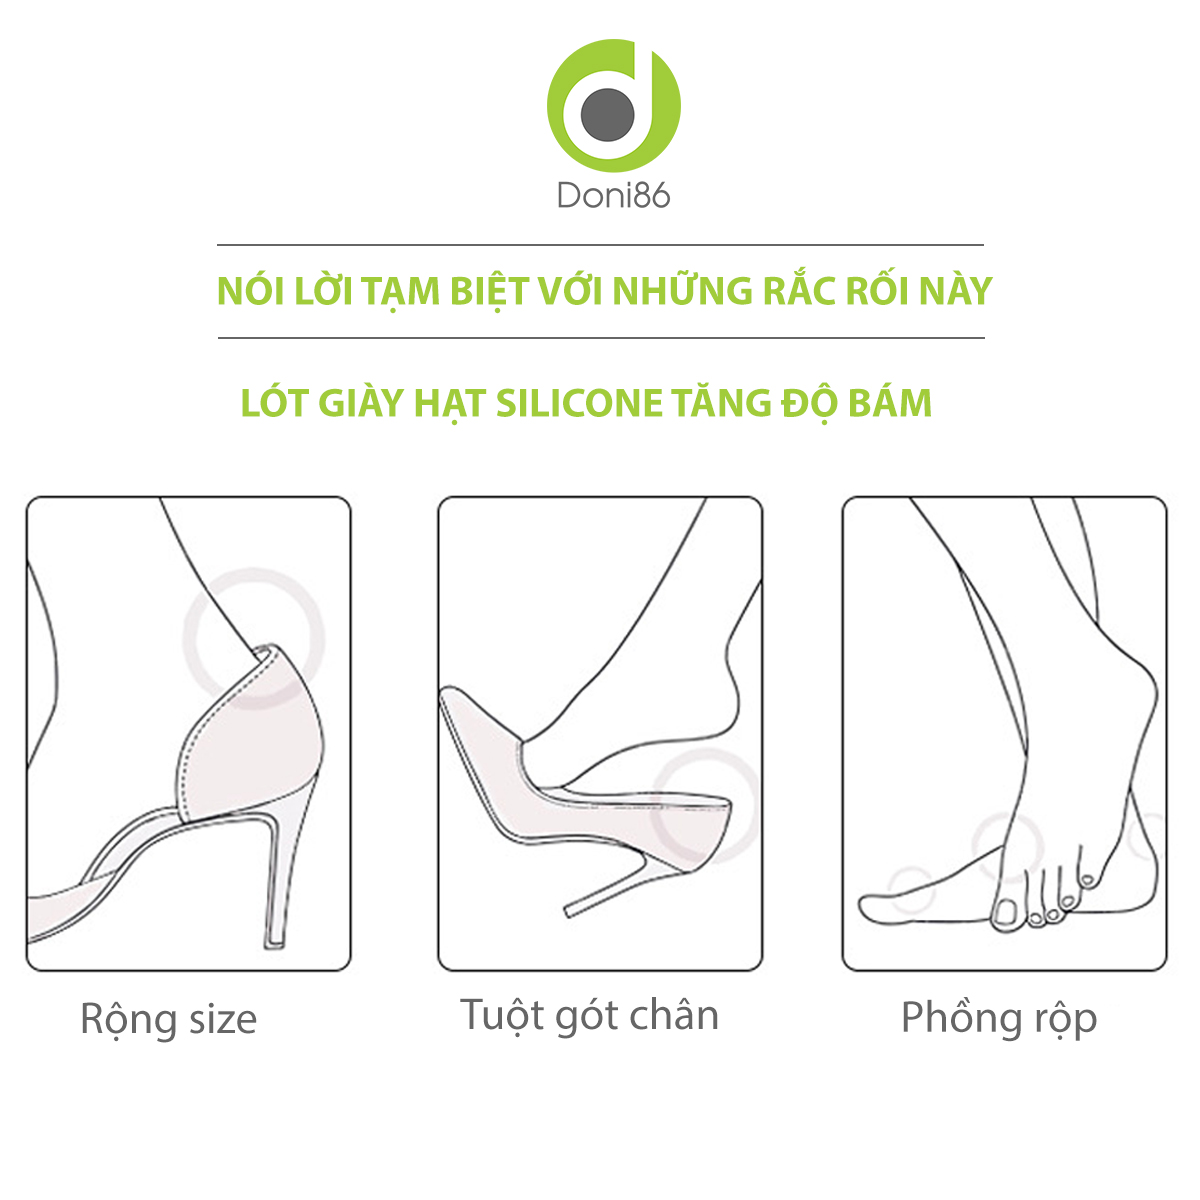 Hình ảnh 2 cặp lót giày bảo vệ gót sau, có hạt silicone tăng độ bám, bảo bệ giót chân, chống trầy, êm chân -  Doni - DOPK223